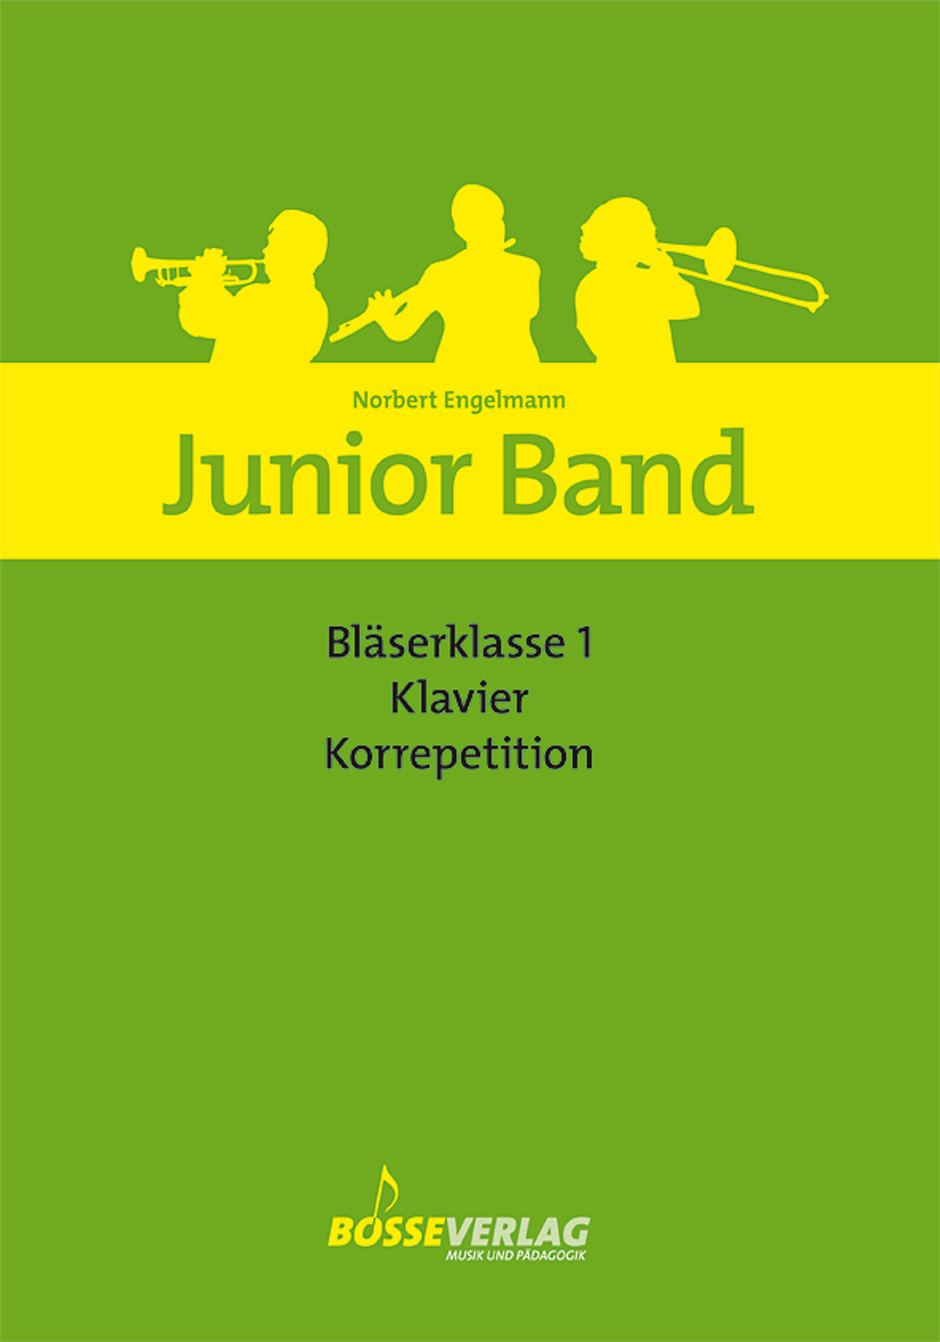 Norbert-Engelmann-Junior-Band-Blaeserklasse-Vol-1-_0001.JPG